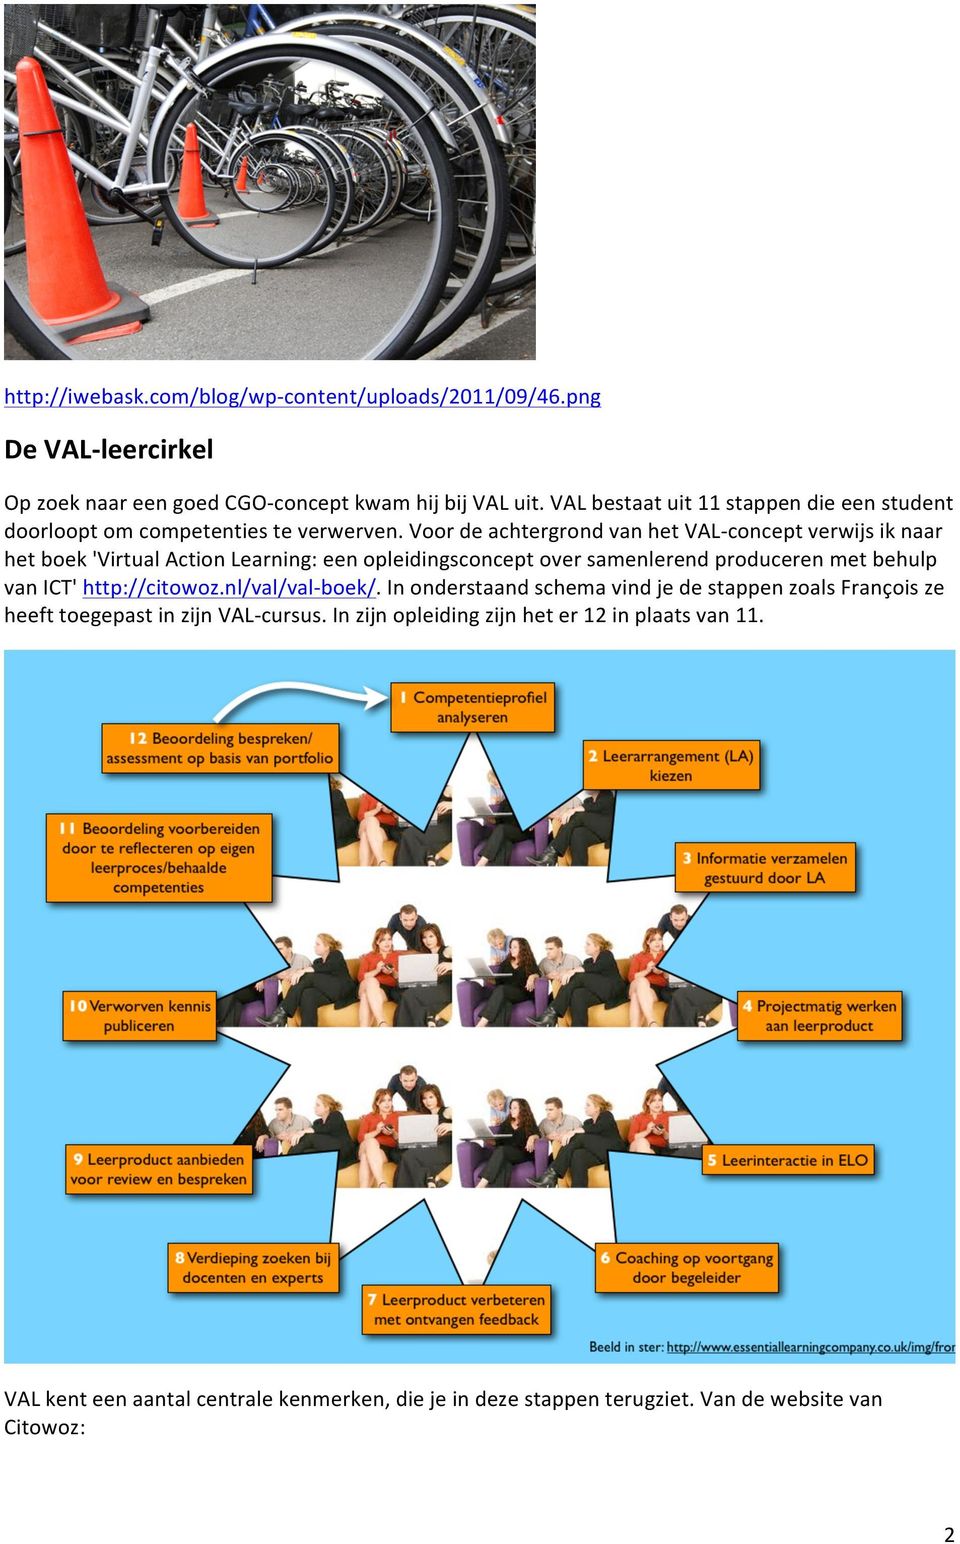 Voor de achtergrond van het VAL- concept verwijs ik naar het boek 'Virtual Action Learning: een opleidingsconcept over samenlerend produceren met behulp van ICT'